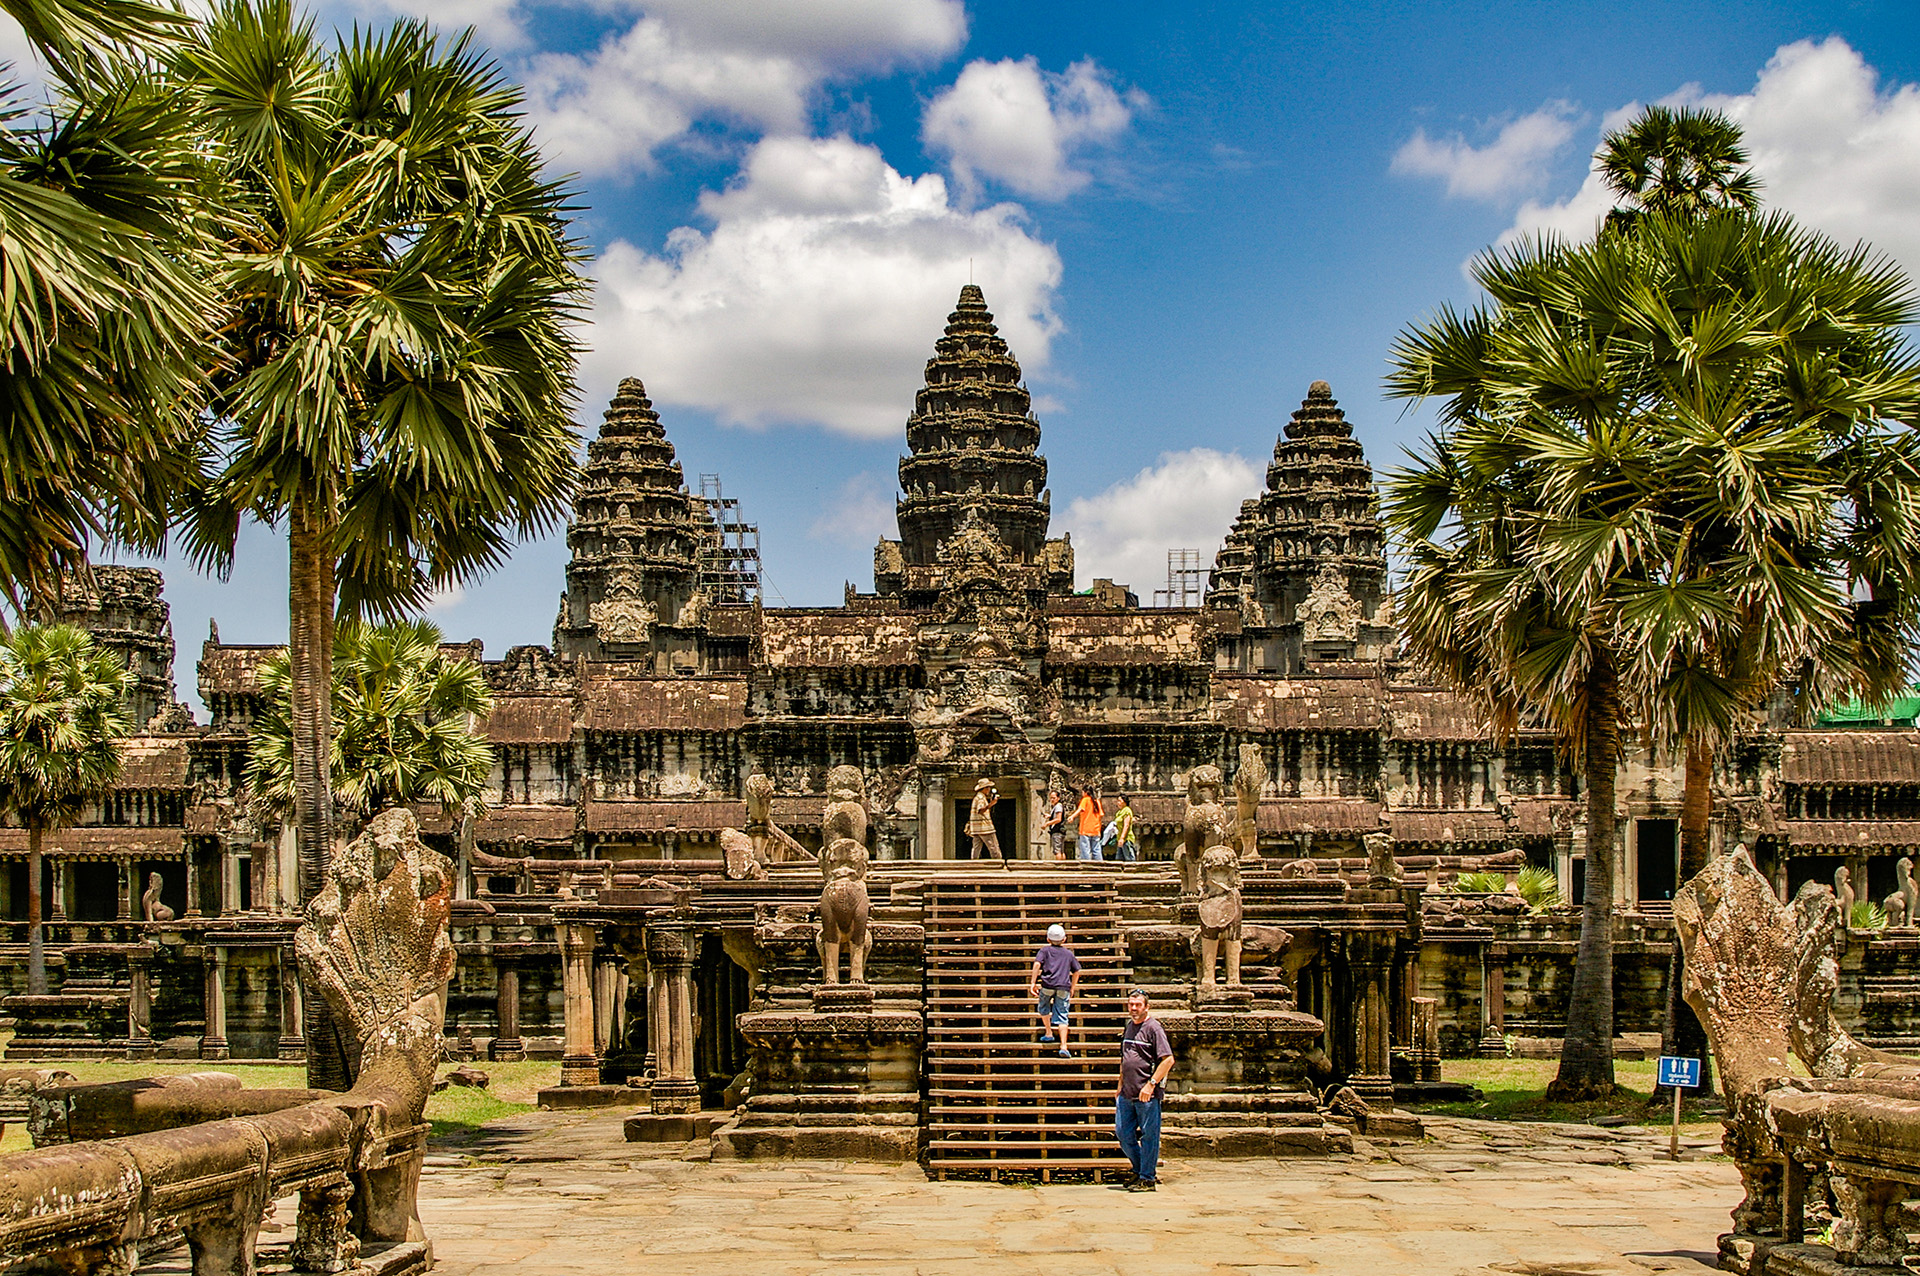 Angkor Wat, es el más famoso de los sitios de Angkor, es una representación del monte Meru, centro del universo y morada de los dioses hindúes. La torre central tiene 55 m de altura, pero en Camboya hay más de 1000 templos y santuarios, incluido Ta Prohm, que tiene sus torres atrapadas por la jungla, y Bayon con sus caras de piedra gigantes